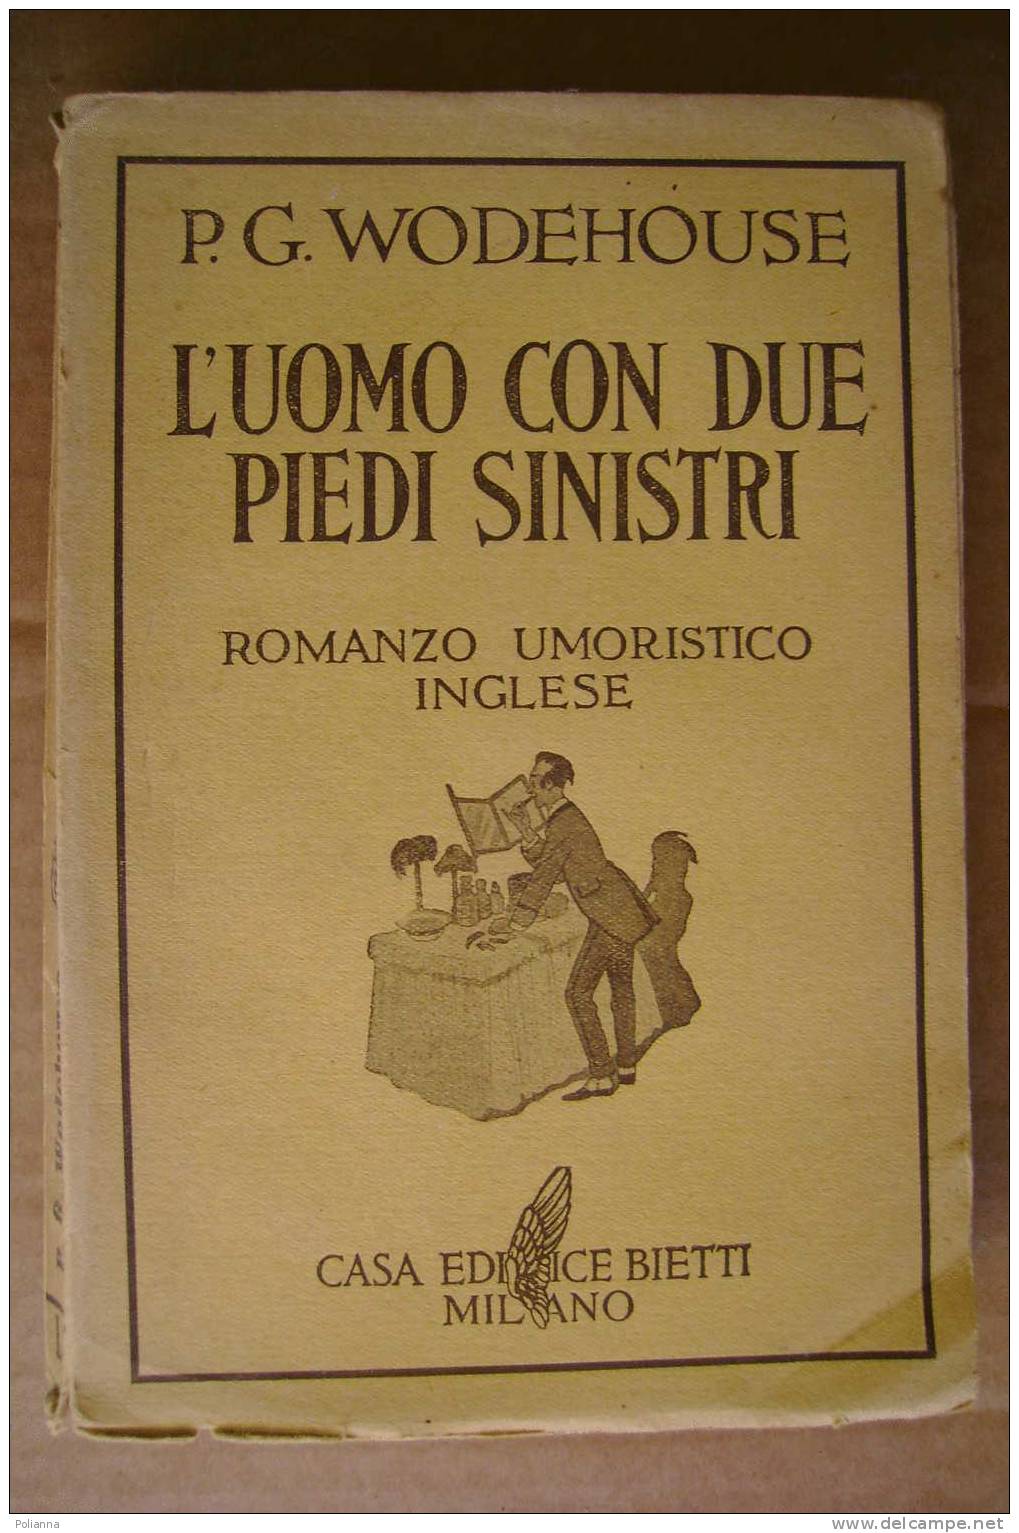 PDK/37  Wodehouse L'UOMO CON DUE PIEDI SINISTRI Casa Editrice Bietti 1938/romanzo Umoristico Inglese - Antiguos